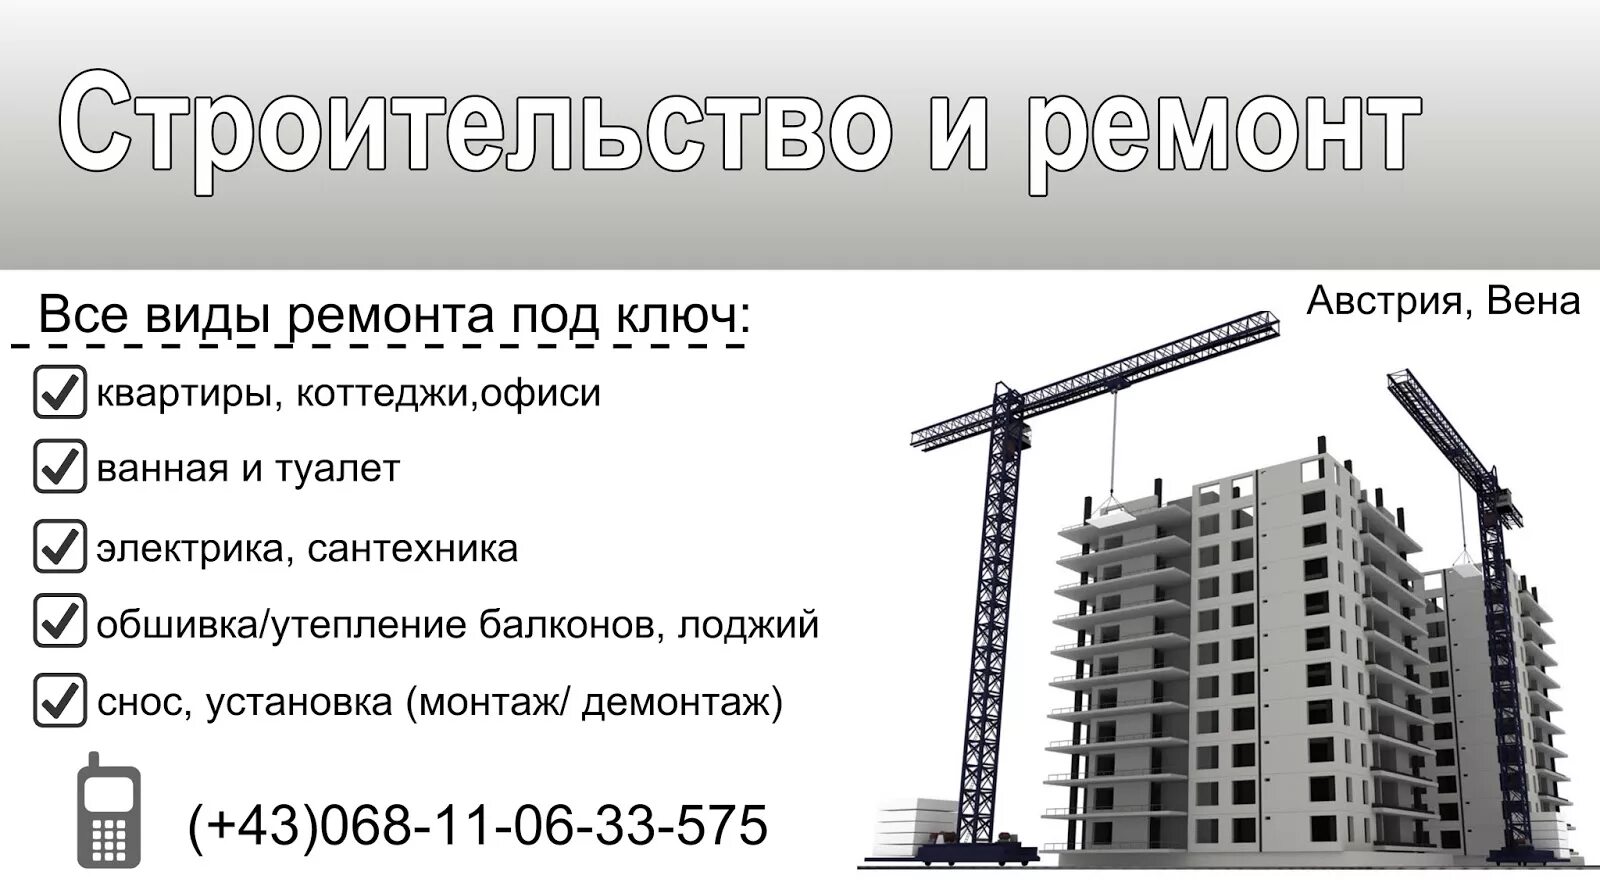 Телефон строительной организации. Название строительных фирм. Название строительной организации. Красивые названия строительных компаний. Название фирмы по строительству.